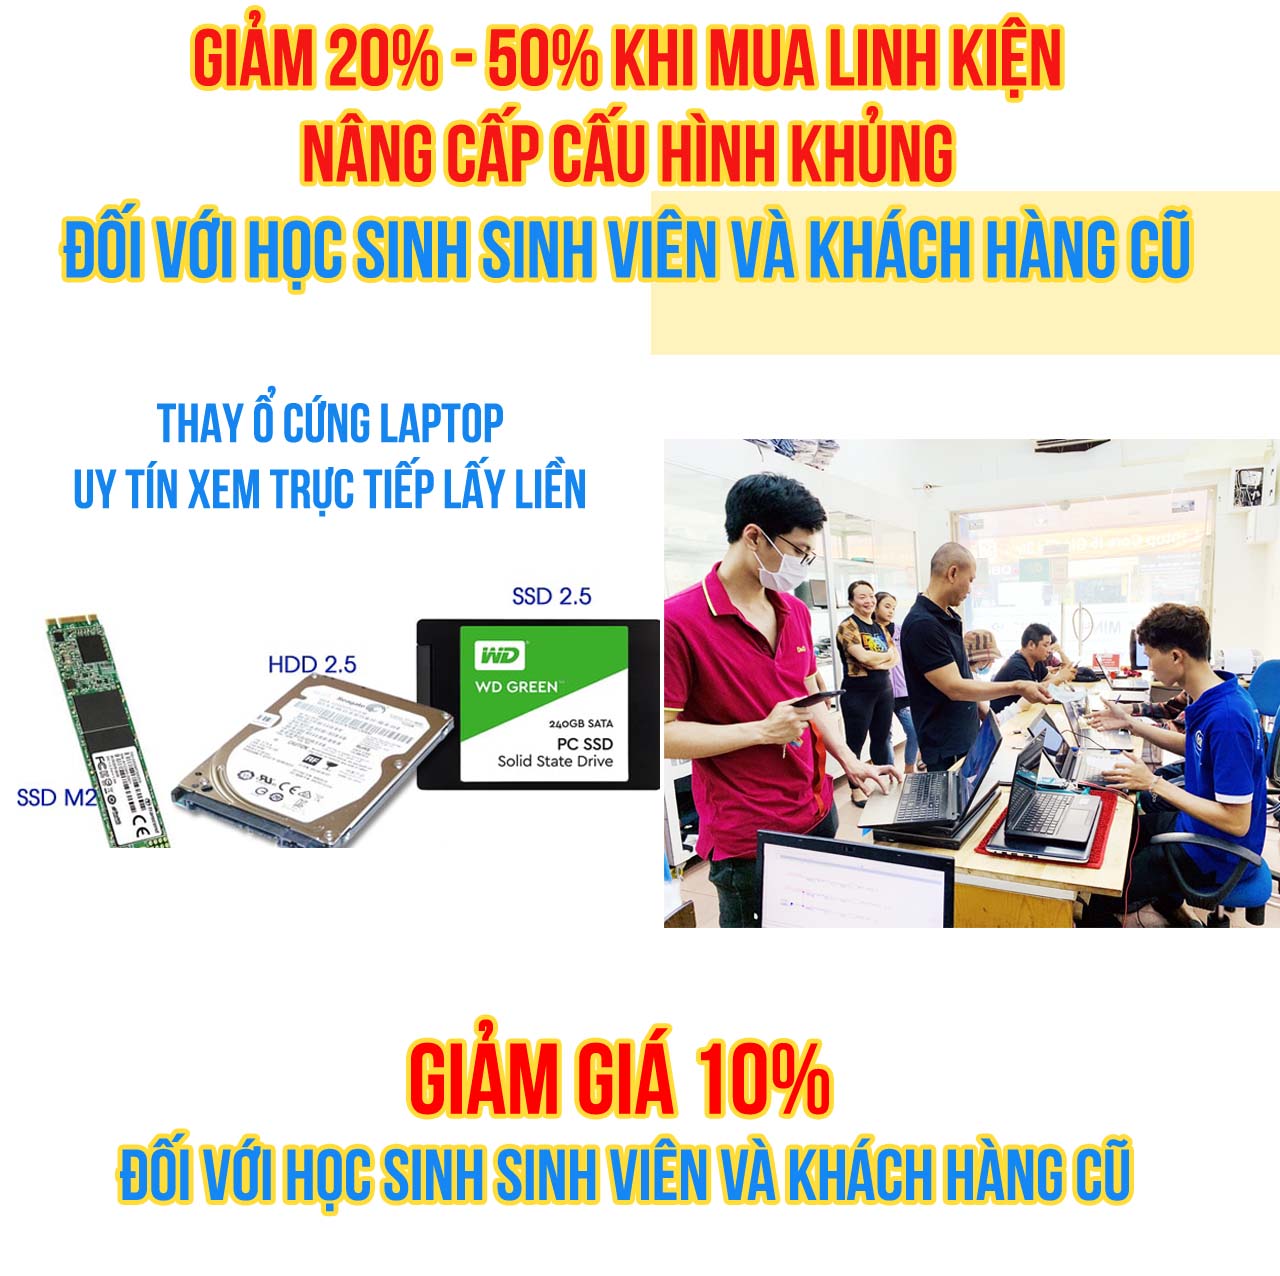 SSD RỜI CHO LAPTOP TẠI TRUNG TÂM NHẬT MINH